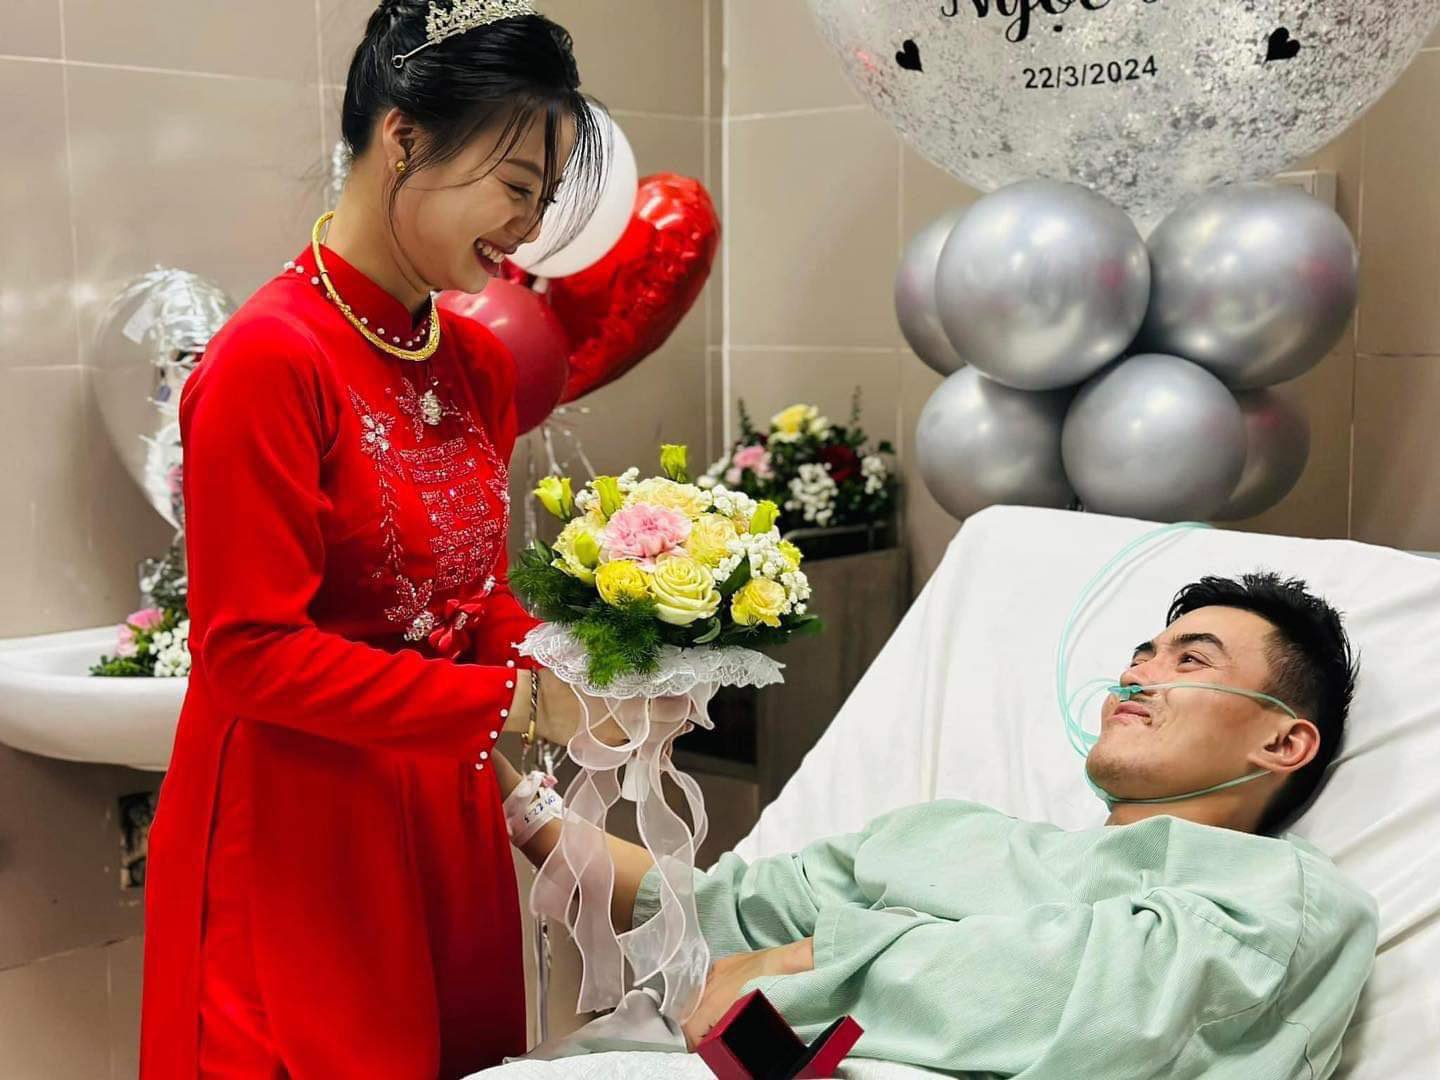 Xúc động đám cưới trong bệnh viện tại Lạng Sơn, cô dâu chú rể trao nhẫn trên giường bệnh - ảnh 4